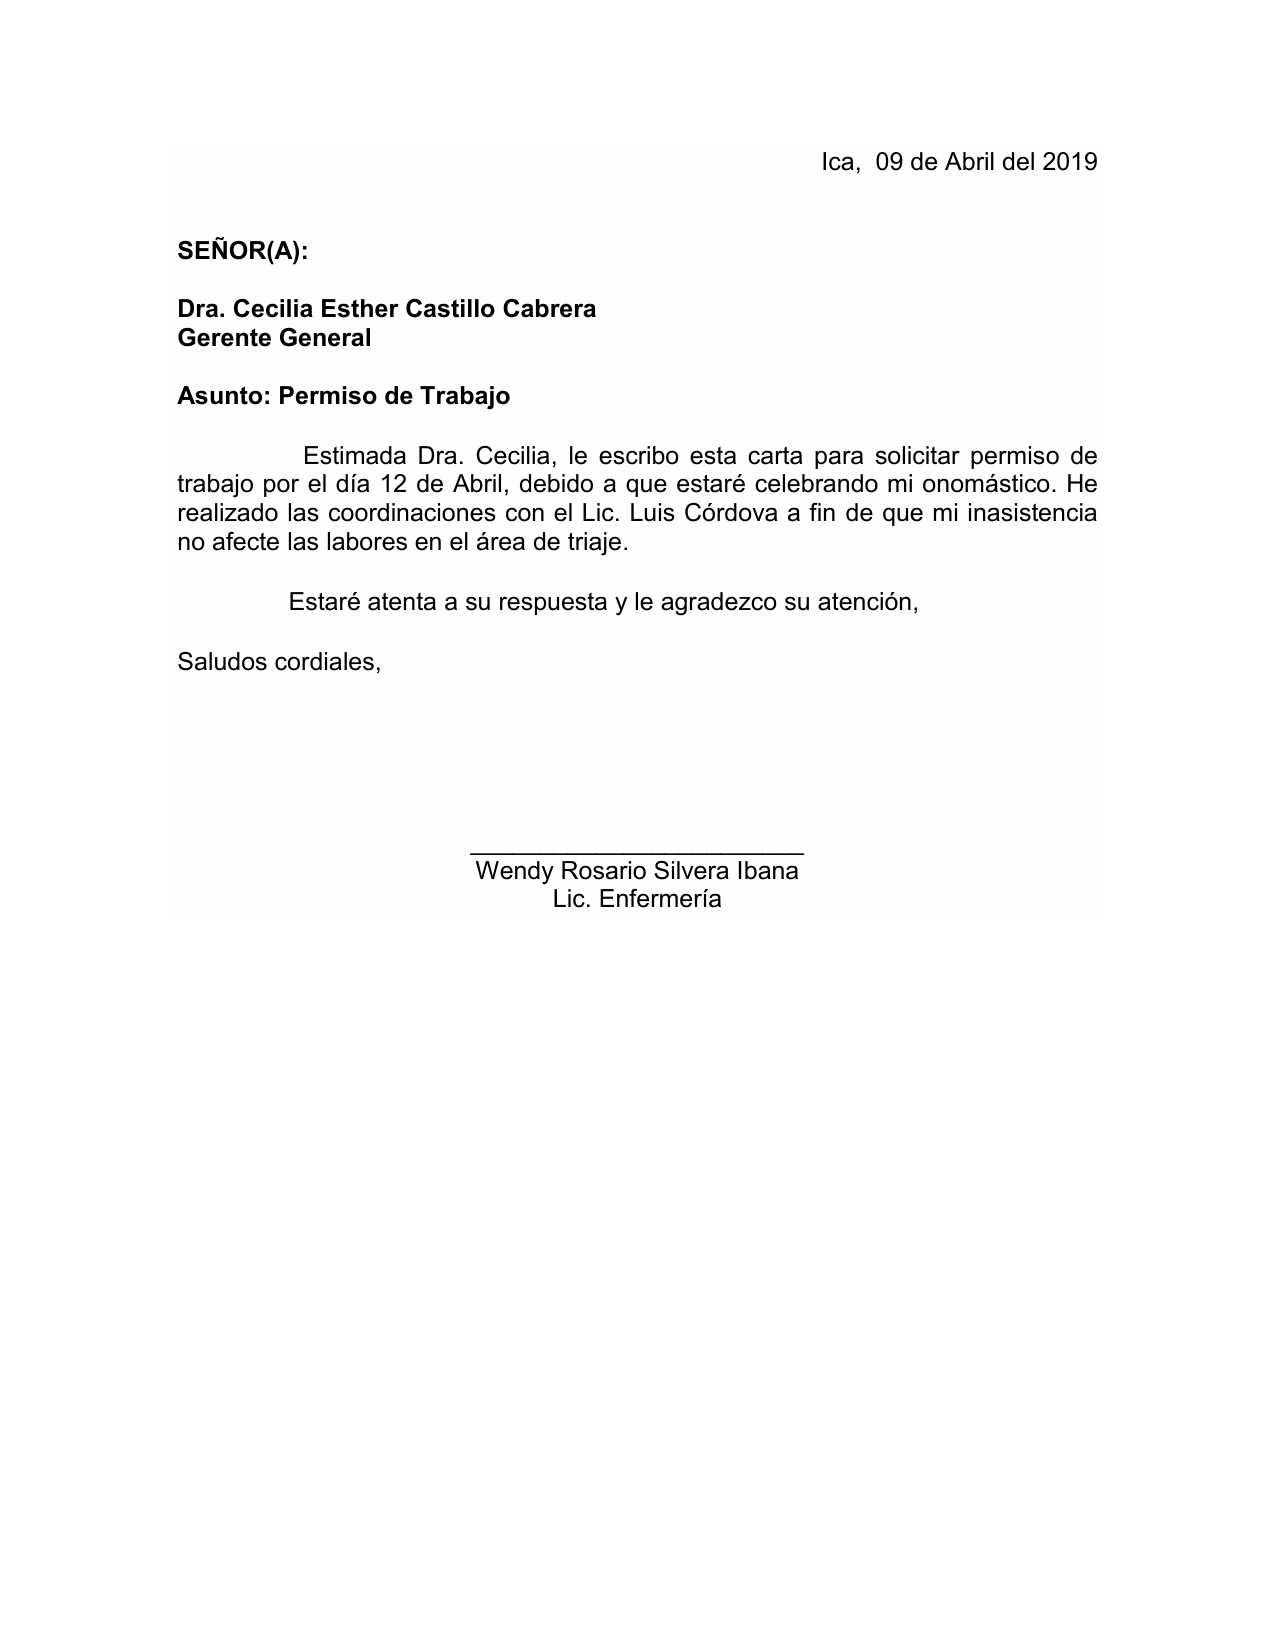 Modelo De Carta De Autorizacion Formato De Solicitud De Personal Hot 0326